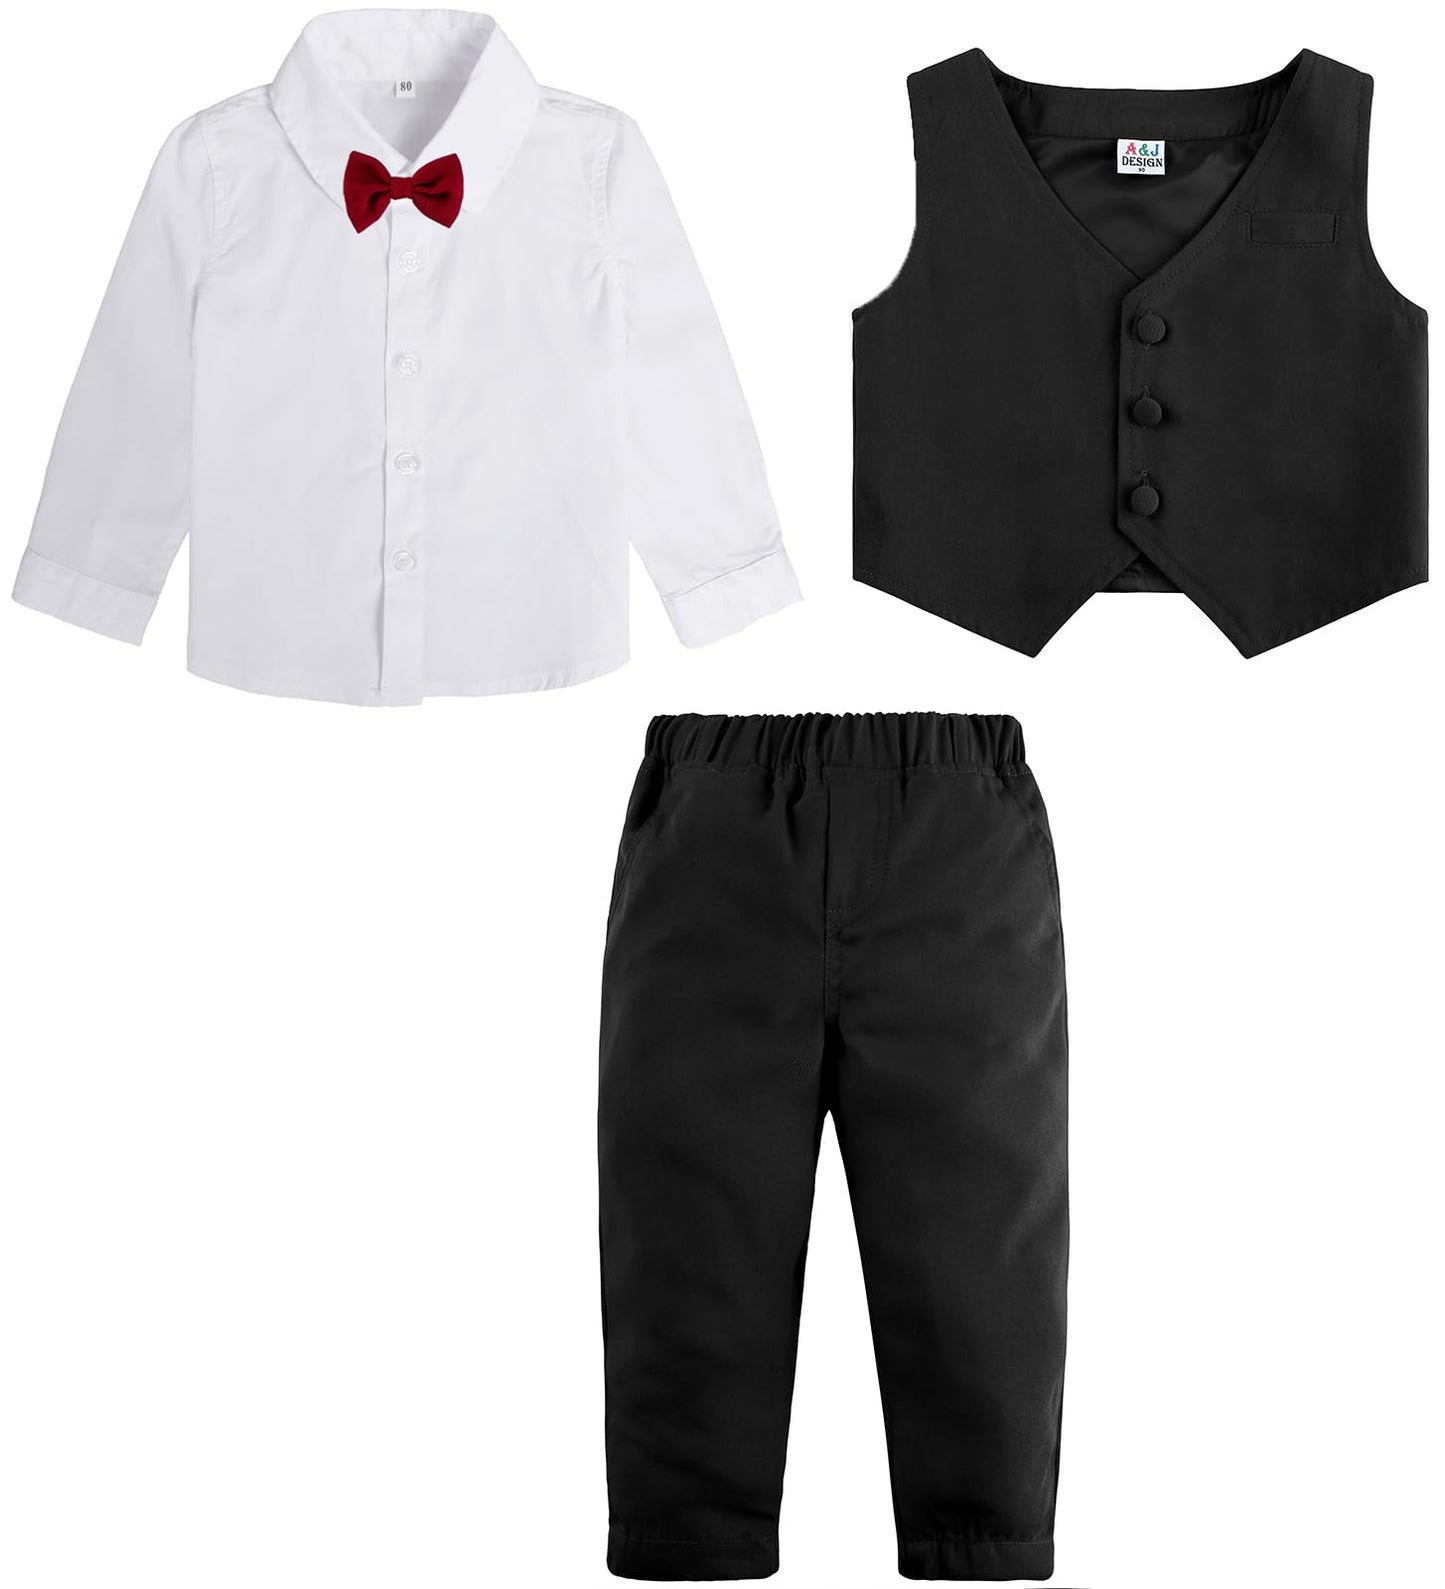 A&J DESIGN Baby Toddler Boys Gentleman Suit Set, 3pcs Outfits Shirts & Vest & Pants 4-5y